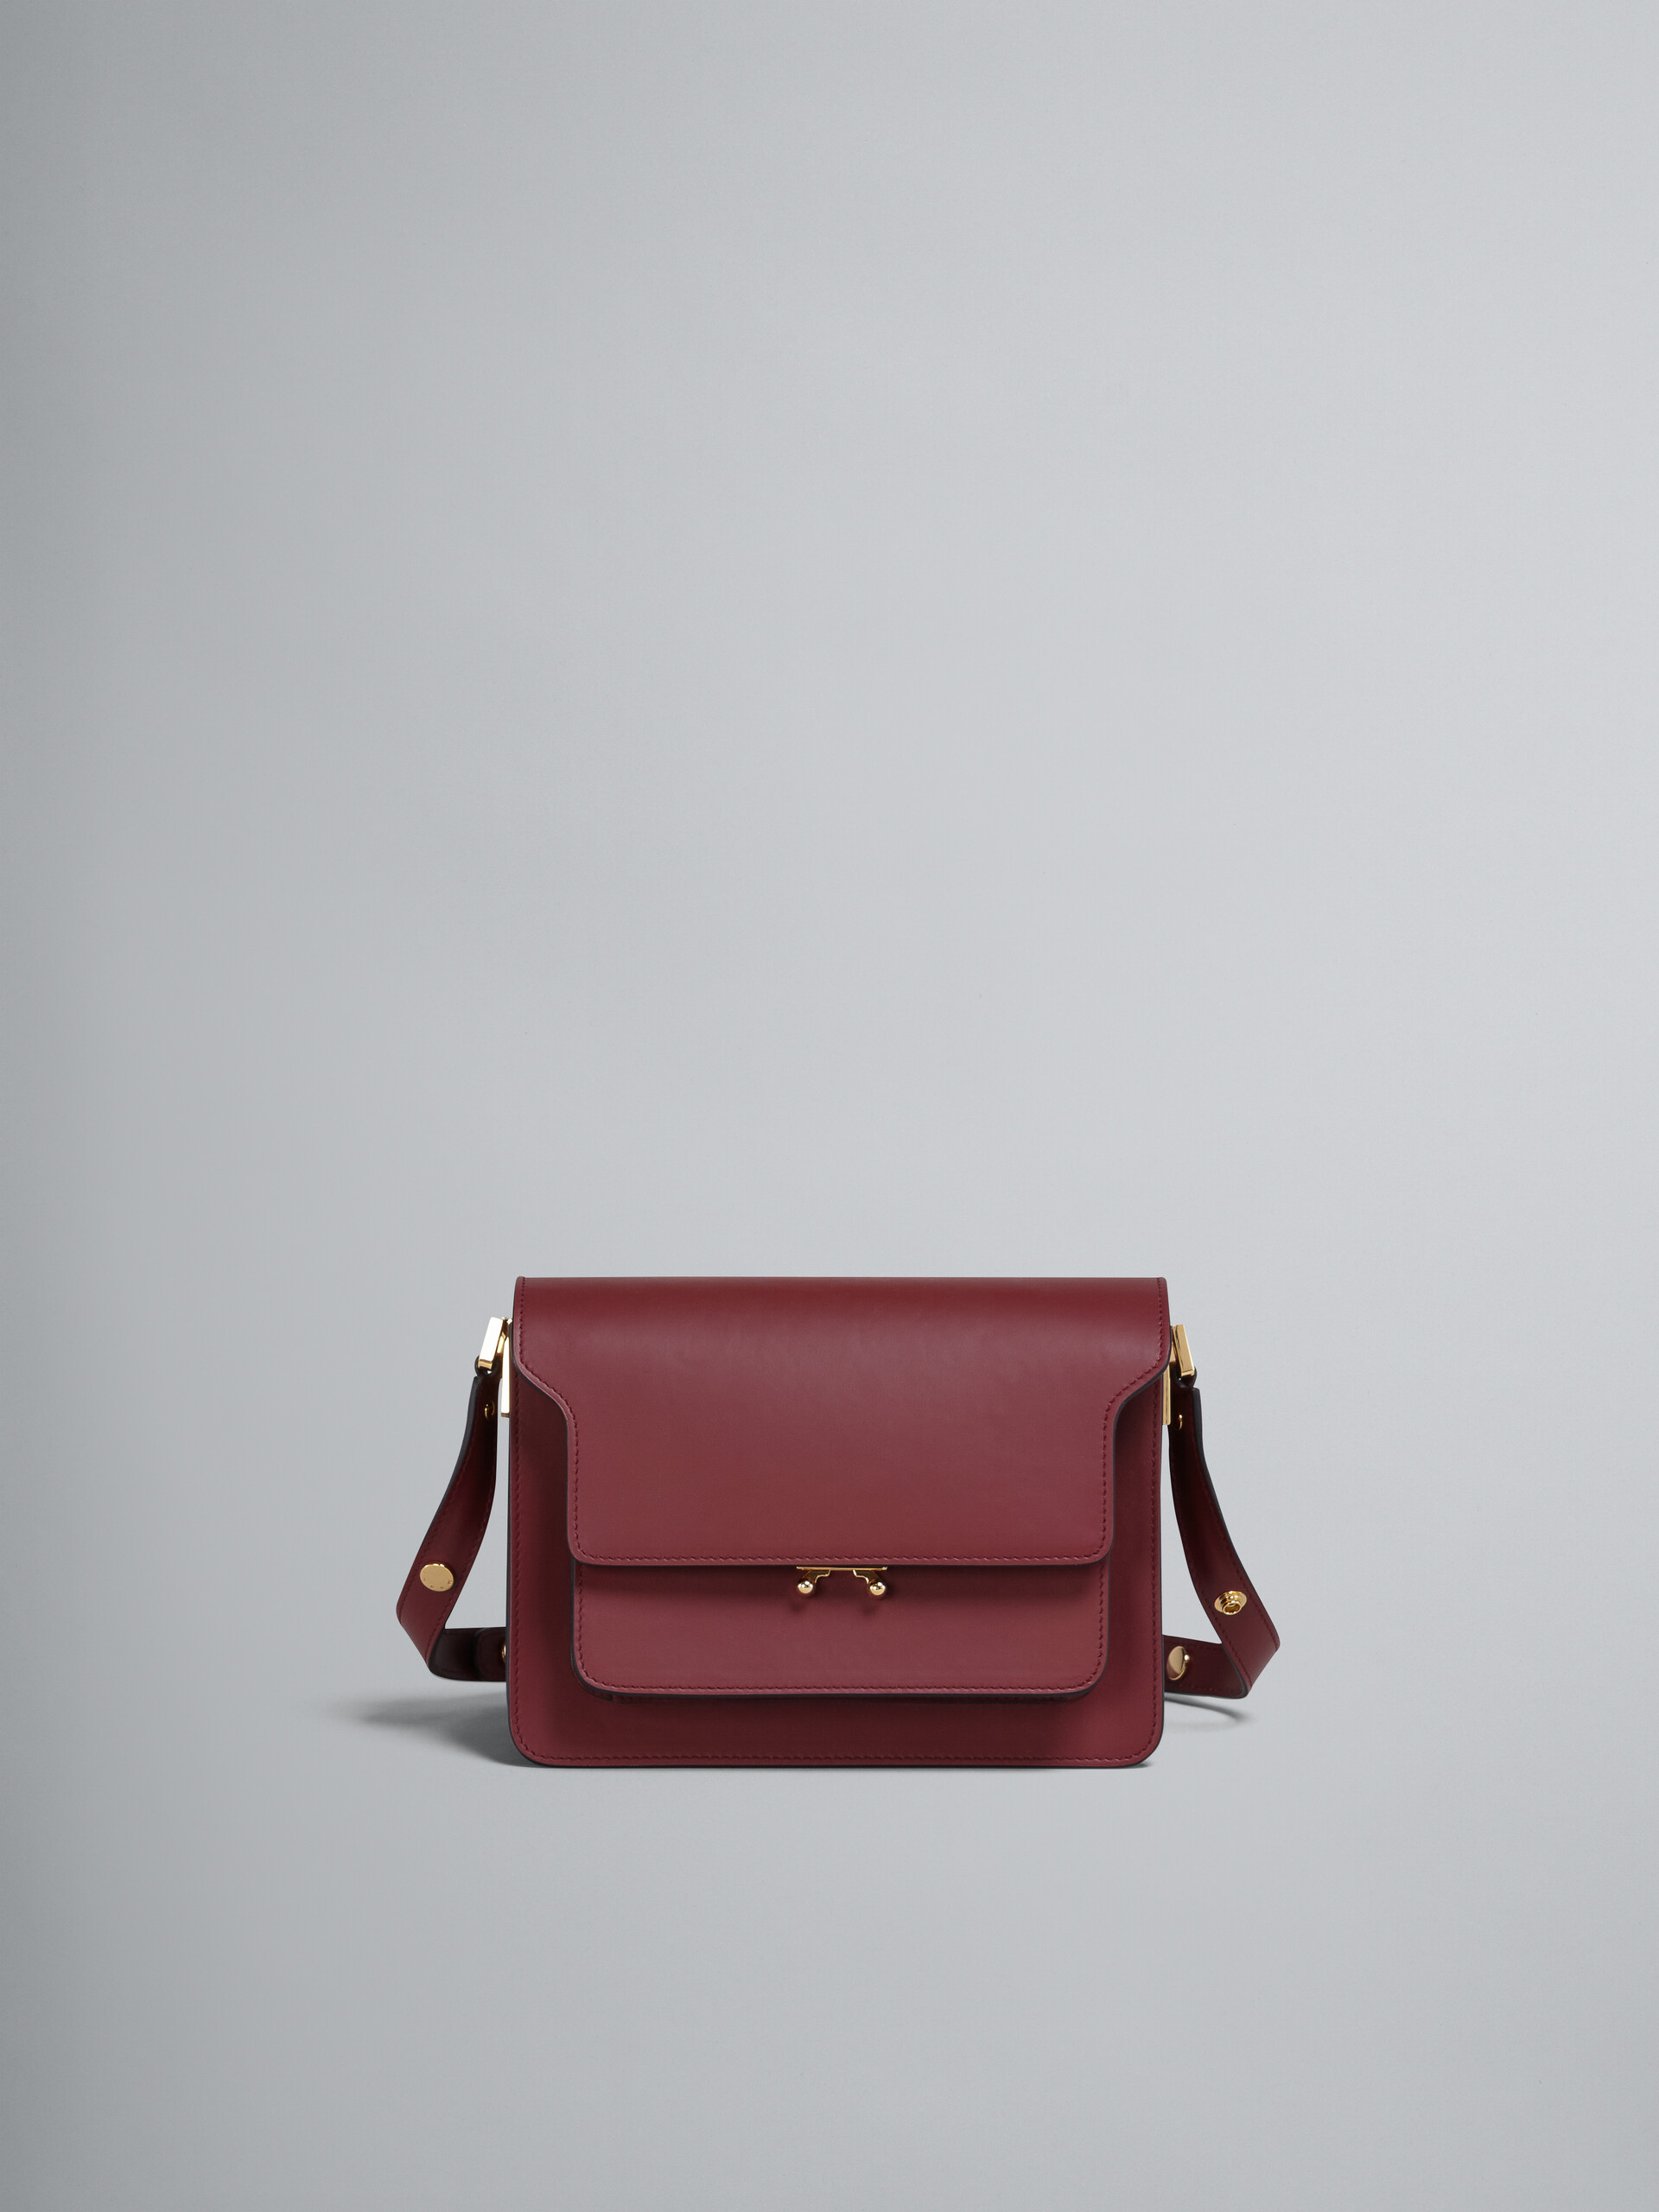 TRUNK medium bag in red leather - Shoulder Bag - Image 1